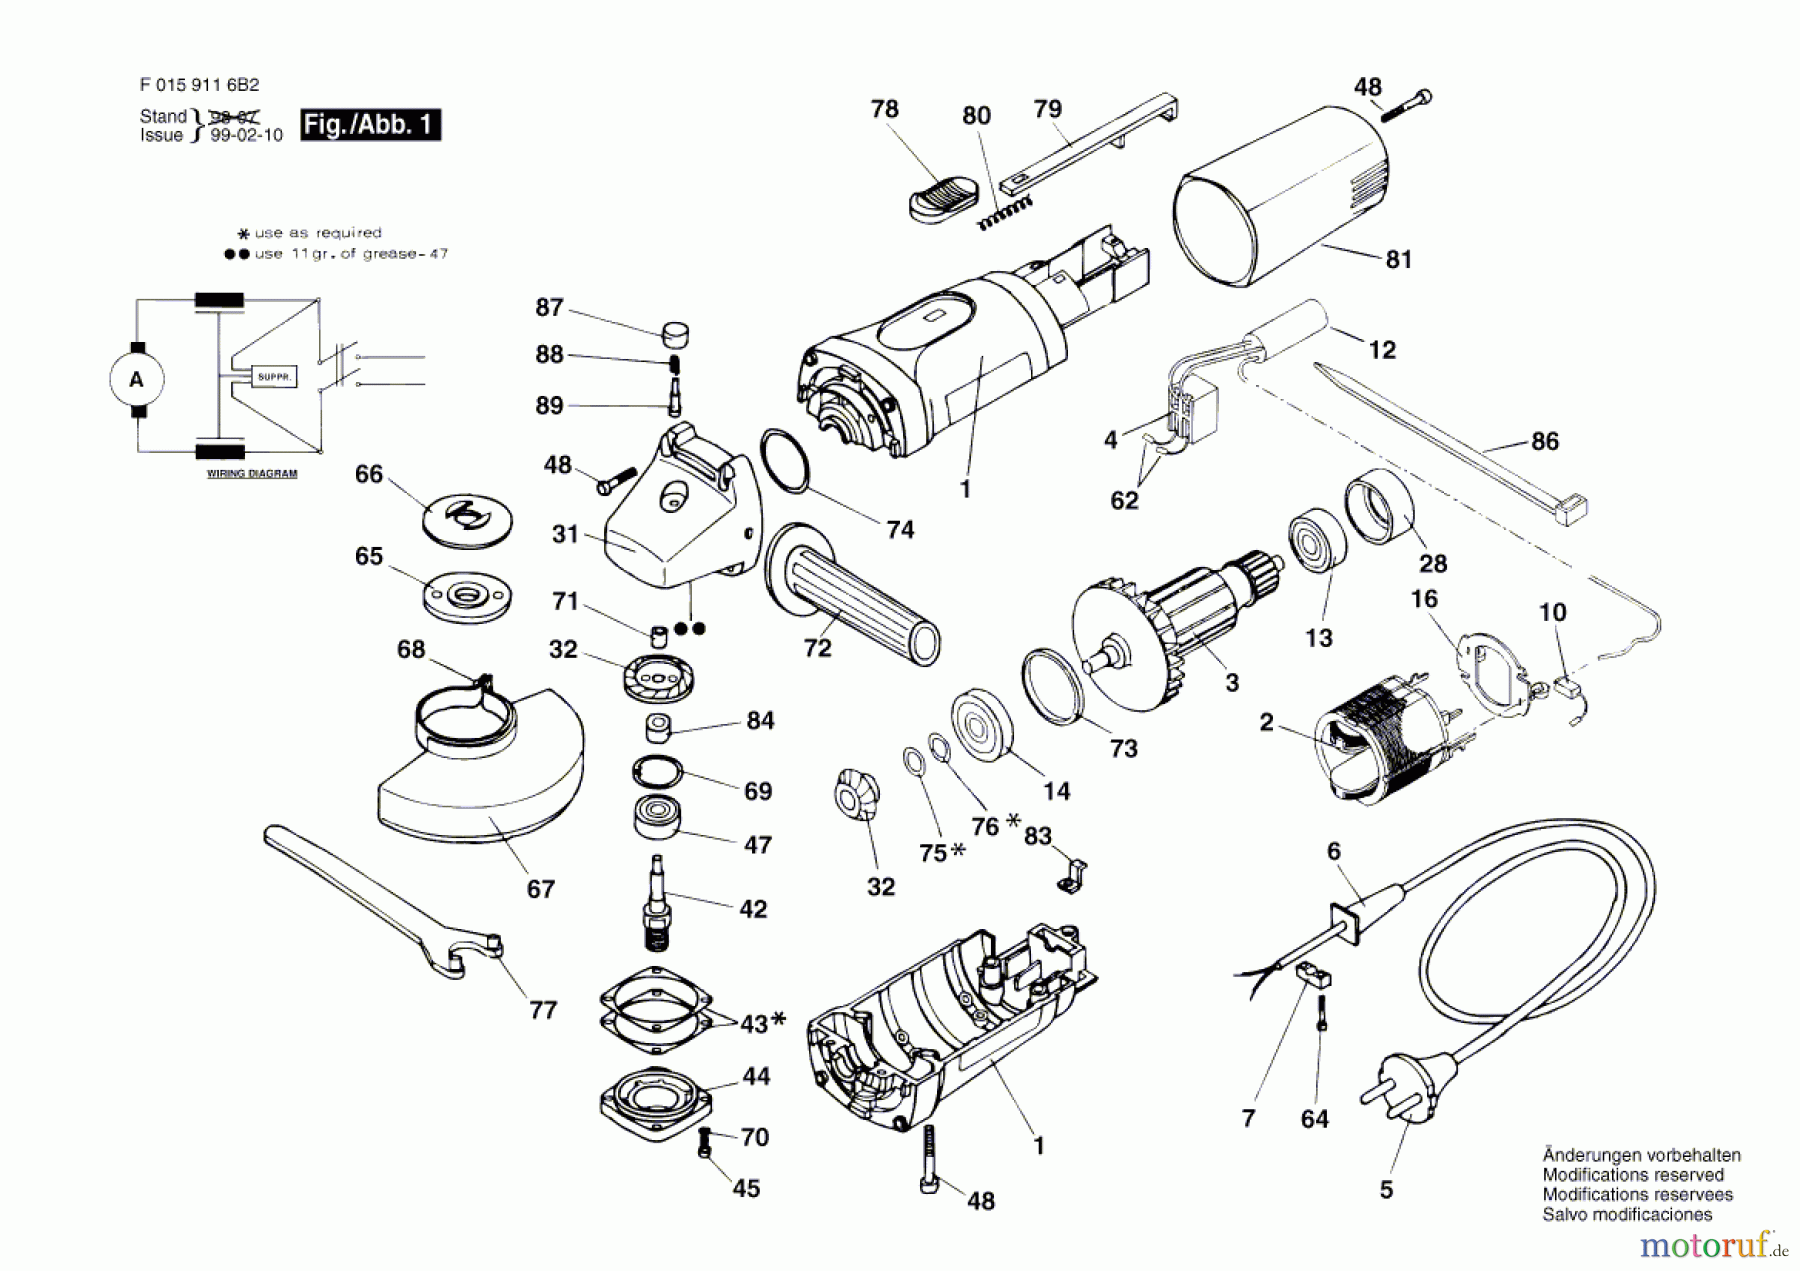  Bosch Werkzeug Winkelschleifer 9116 H2 Seite 1